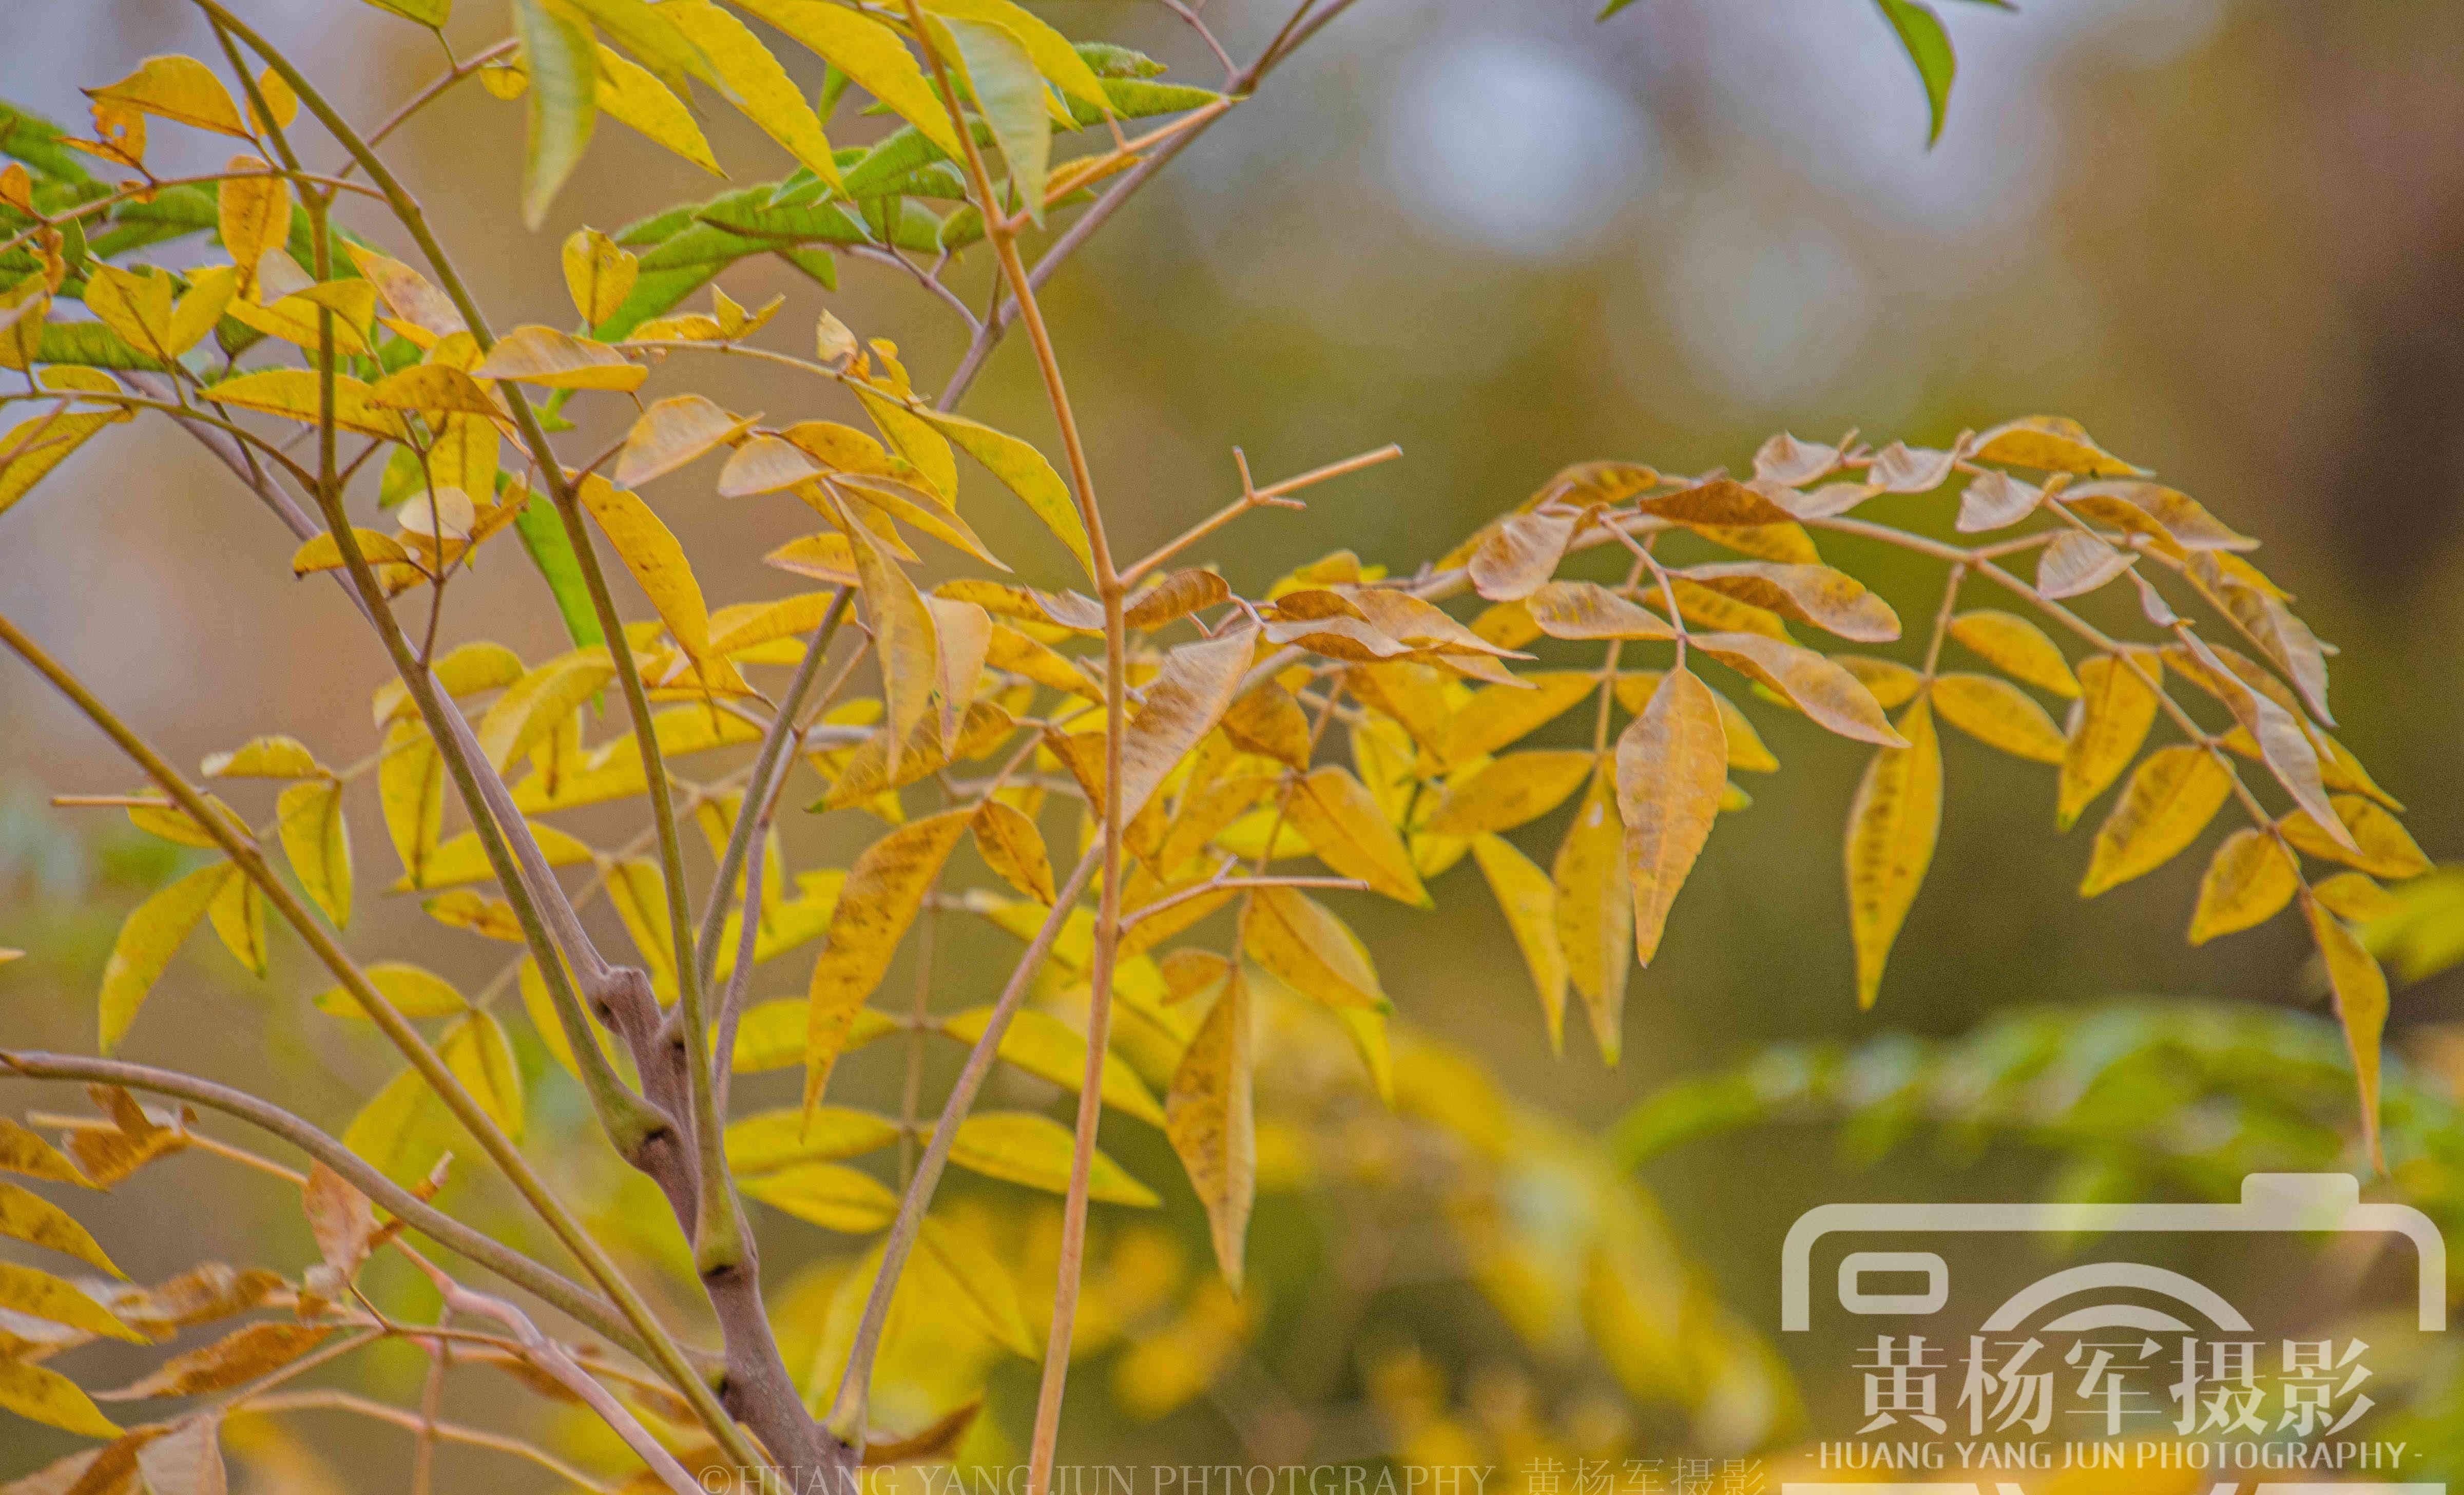 遇见深秋叶黄的苦楝树,熟悉的乡村景色美丽多彩的叶子